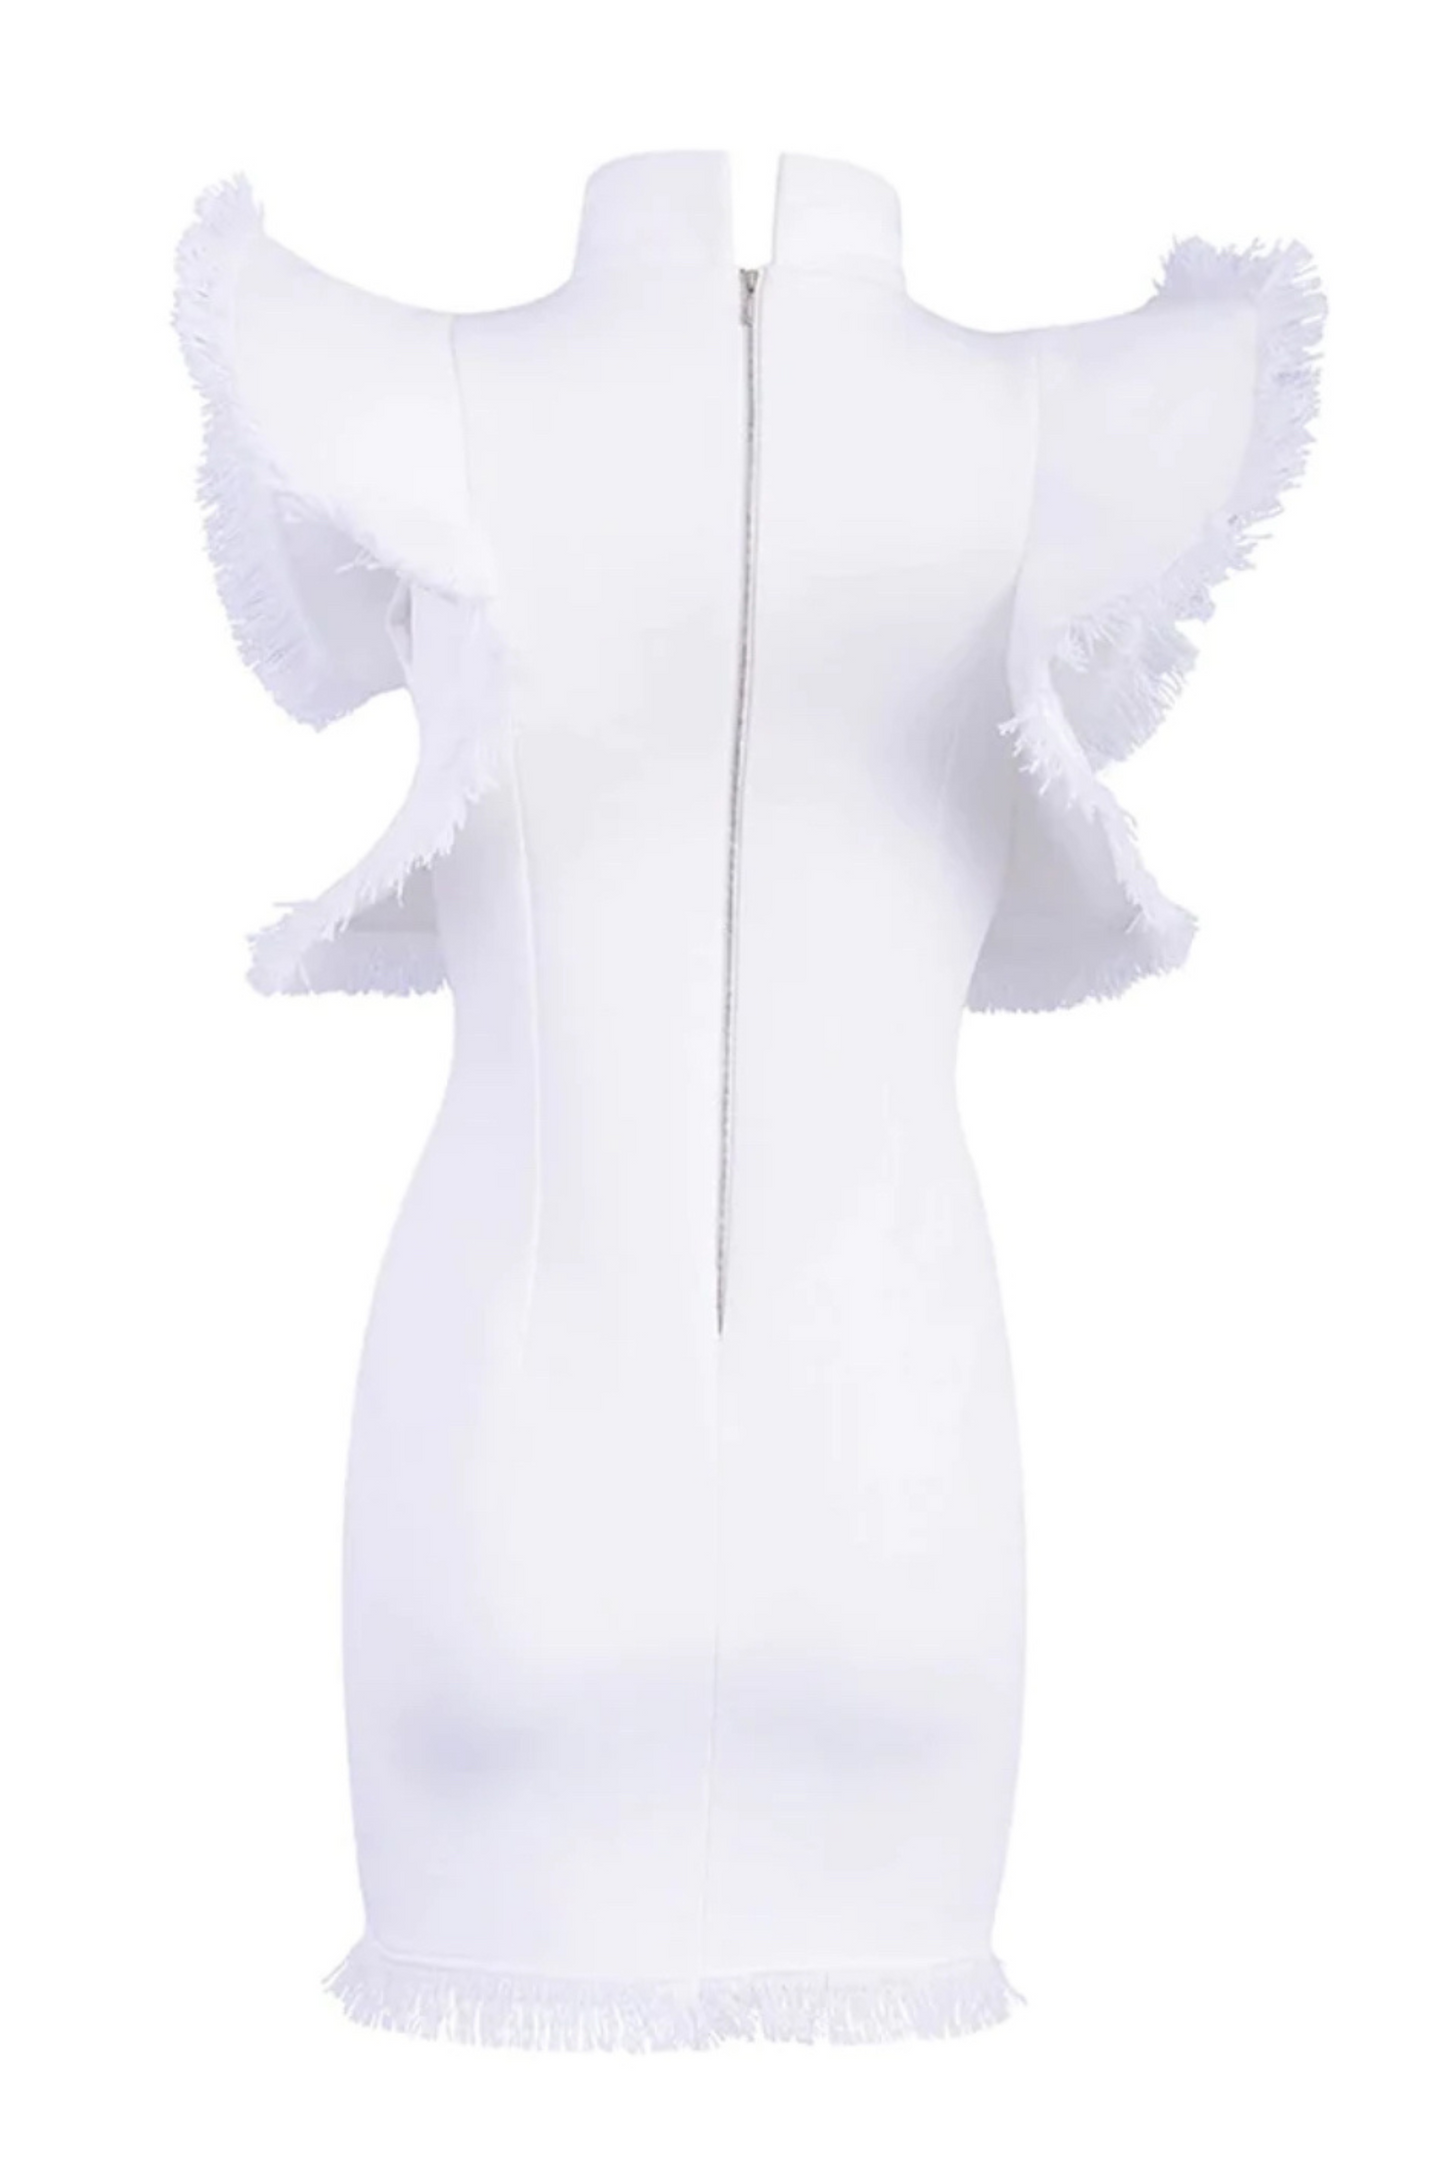 SAVANAH WHITE BODYCON DRESS